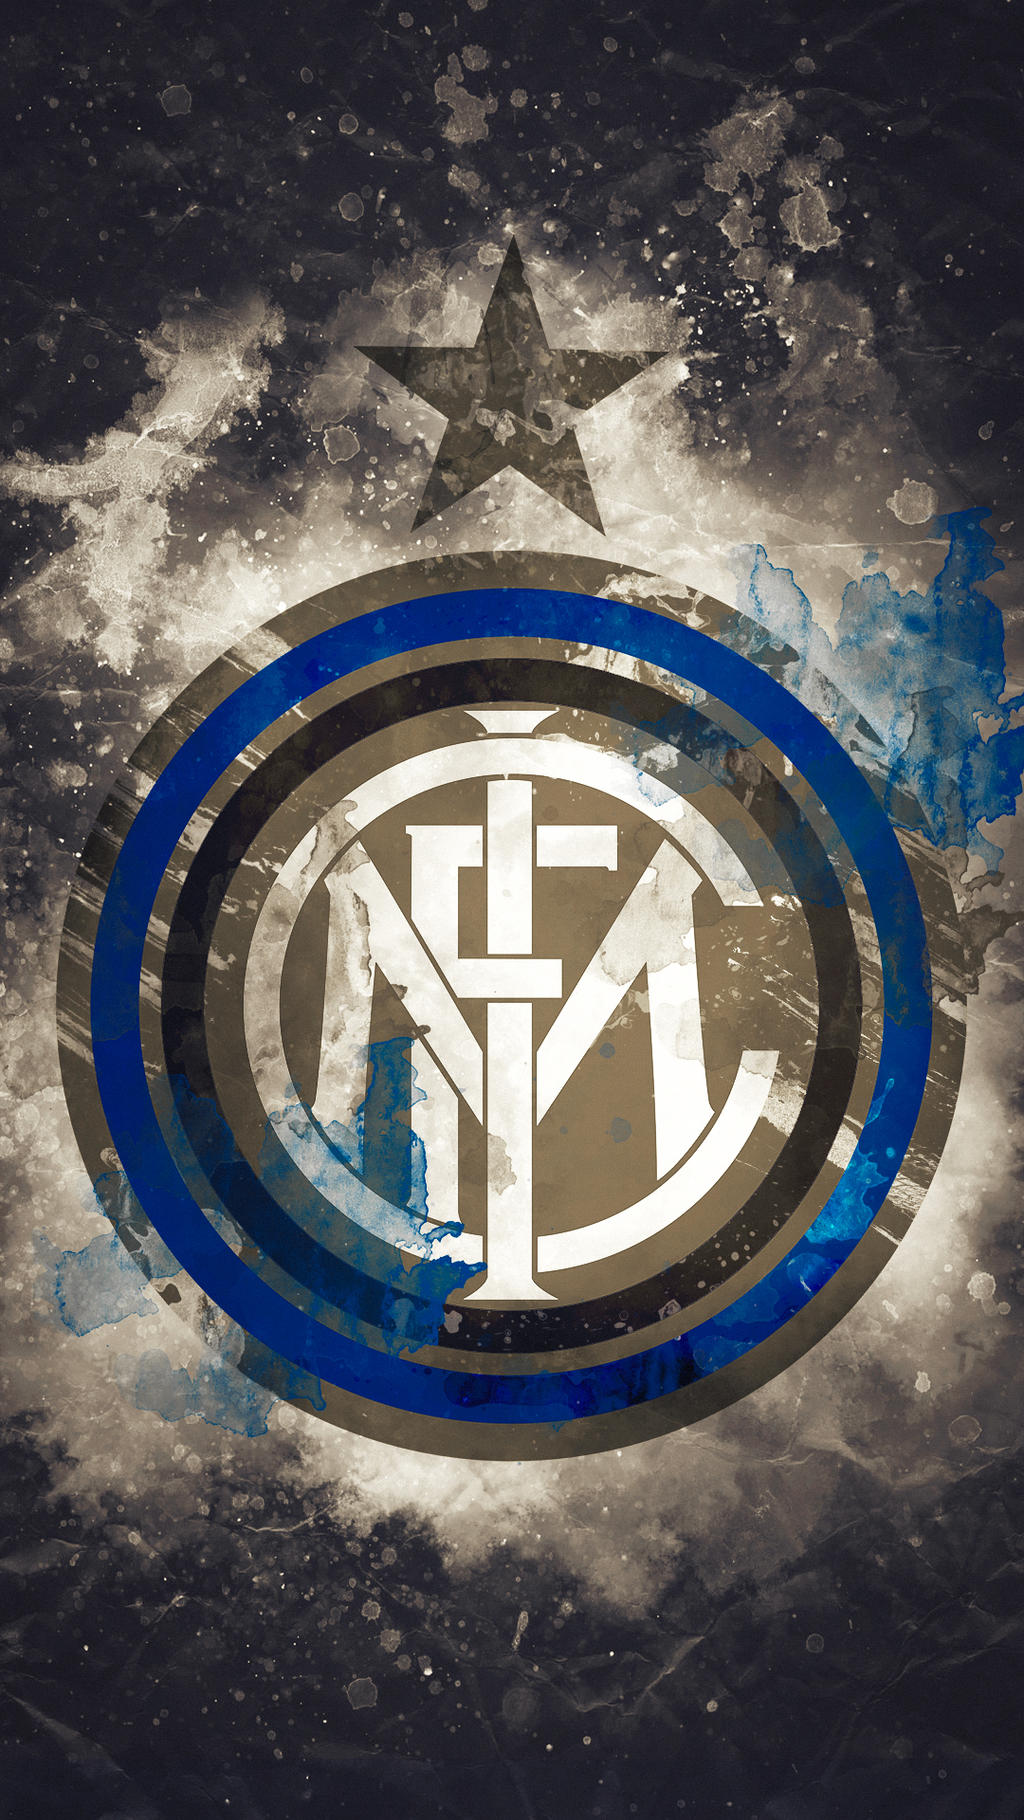 Inter Milan - HD Logo Wallpaper by Kerimov23 on DeviantArt